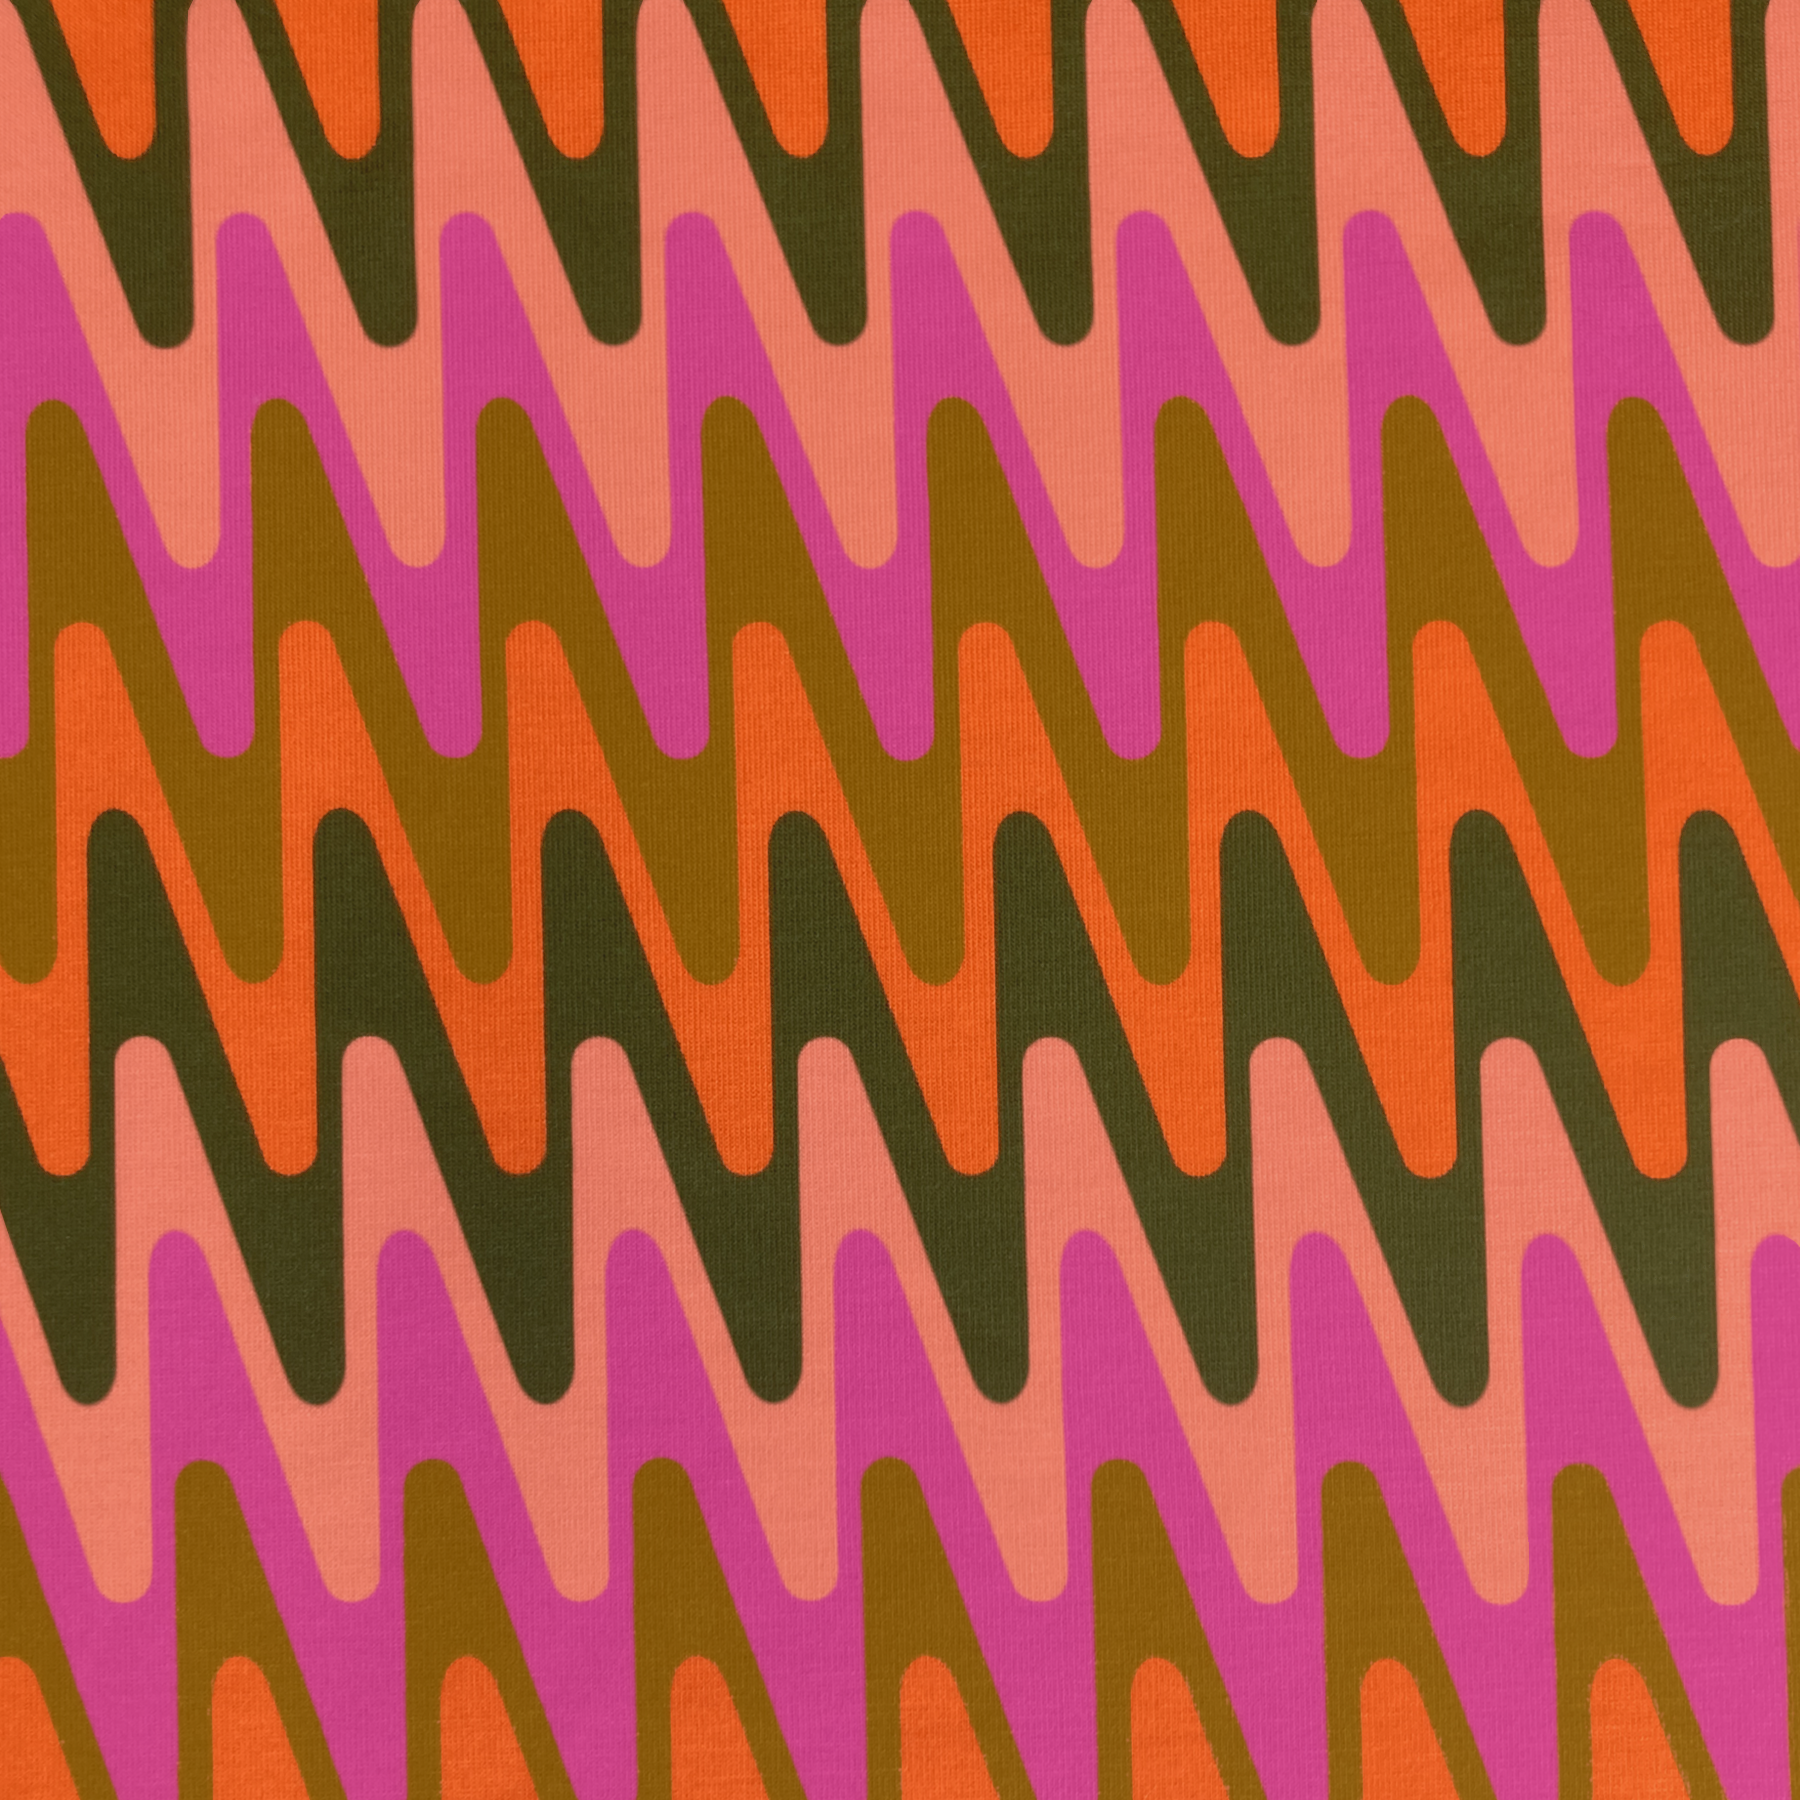 Sine Waves pattern, groovy mid-century op-art steep triangular waves, in Neon Earth Tones colorway